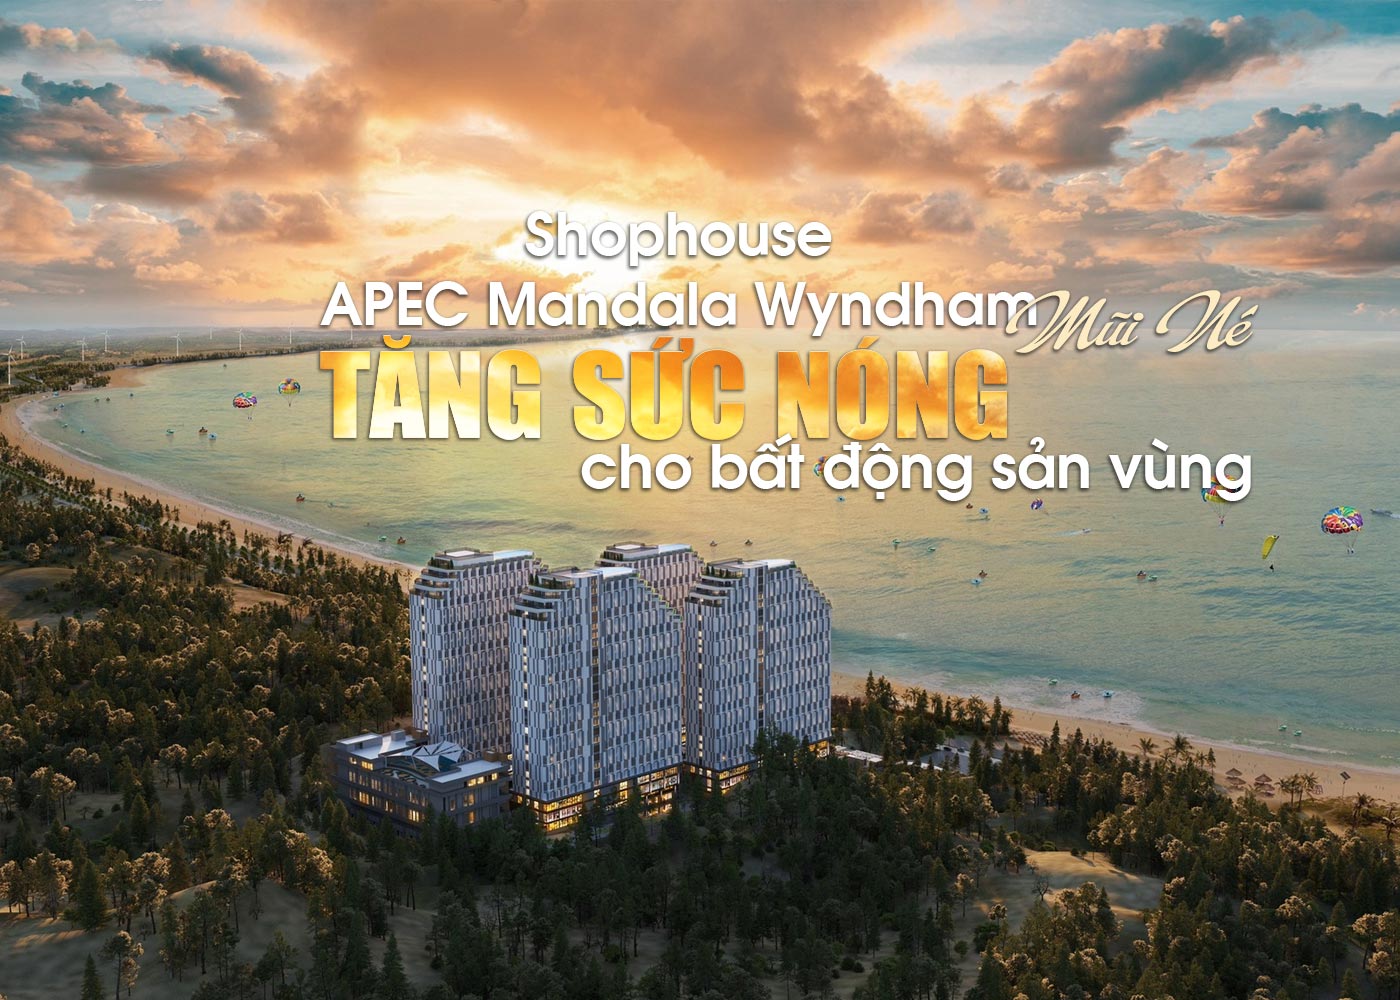 Shophouse APEC Mandala Wyndham Mũi Né tăng sức nóng cho bất động sản vùng - Ảnh 1